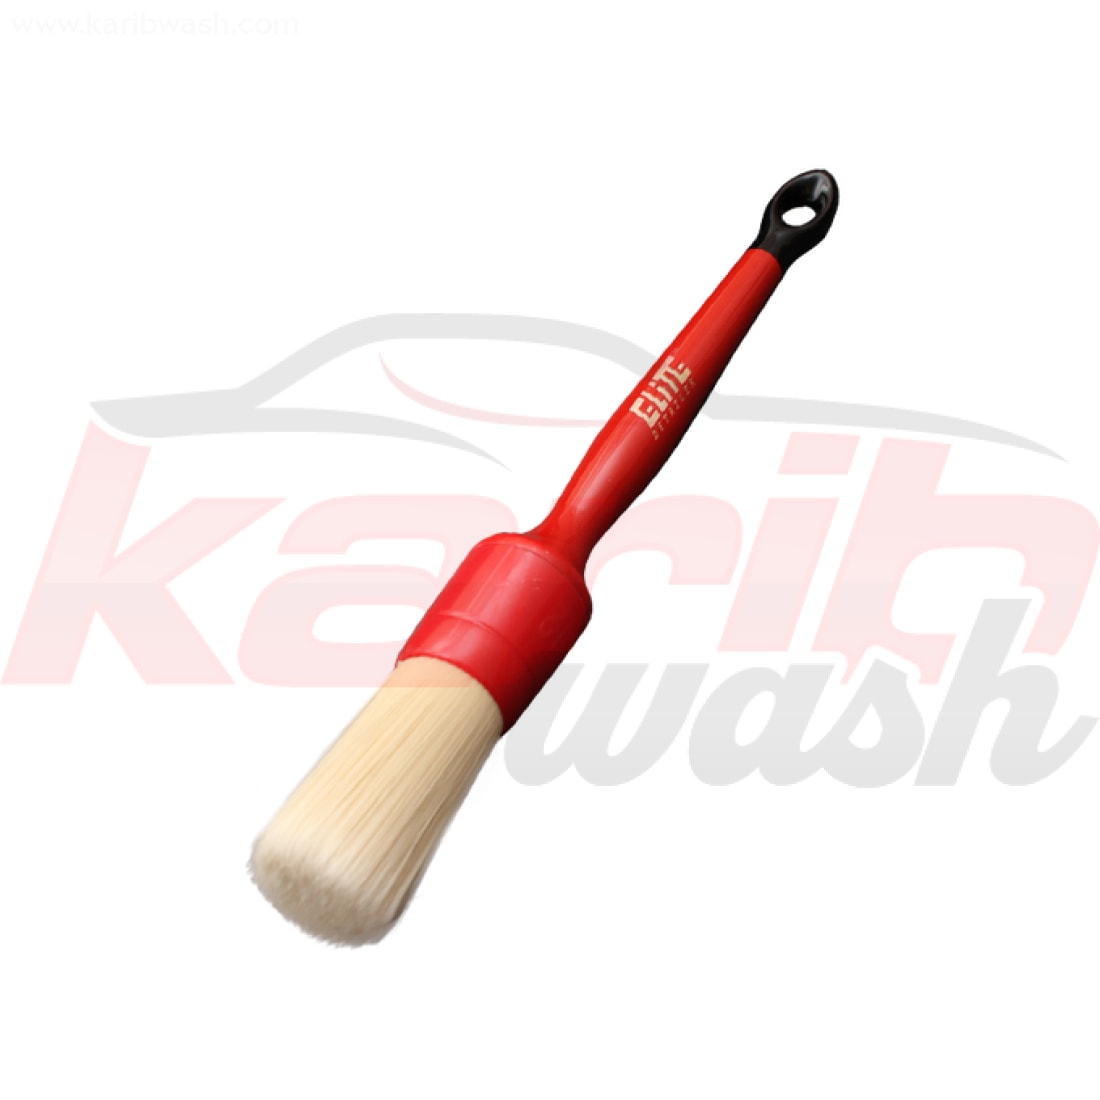 Soft Detailing Brush 12 - 25mm - ELITE DETAILER - KARIBWASH